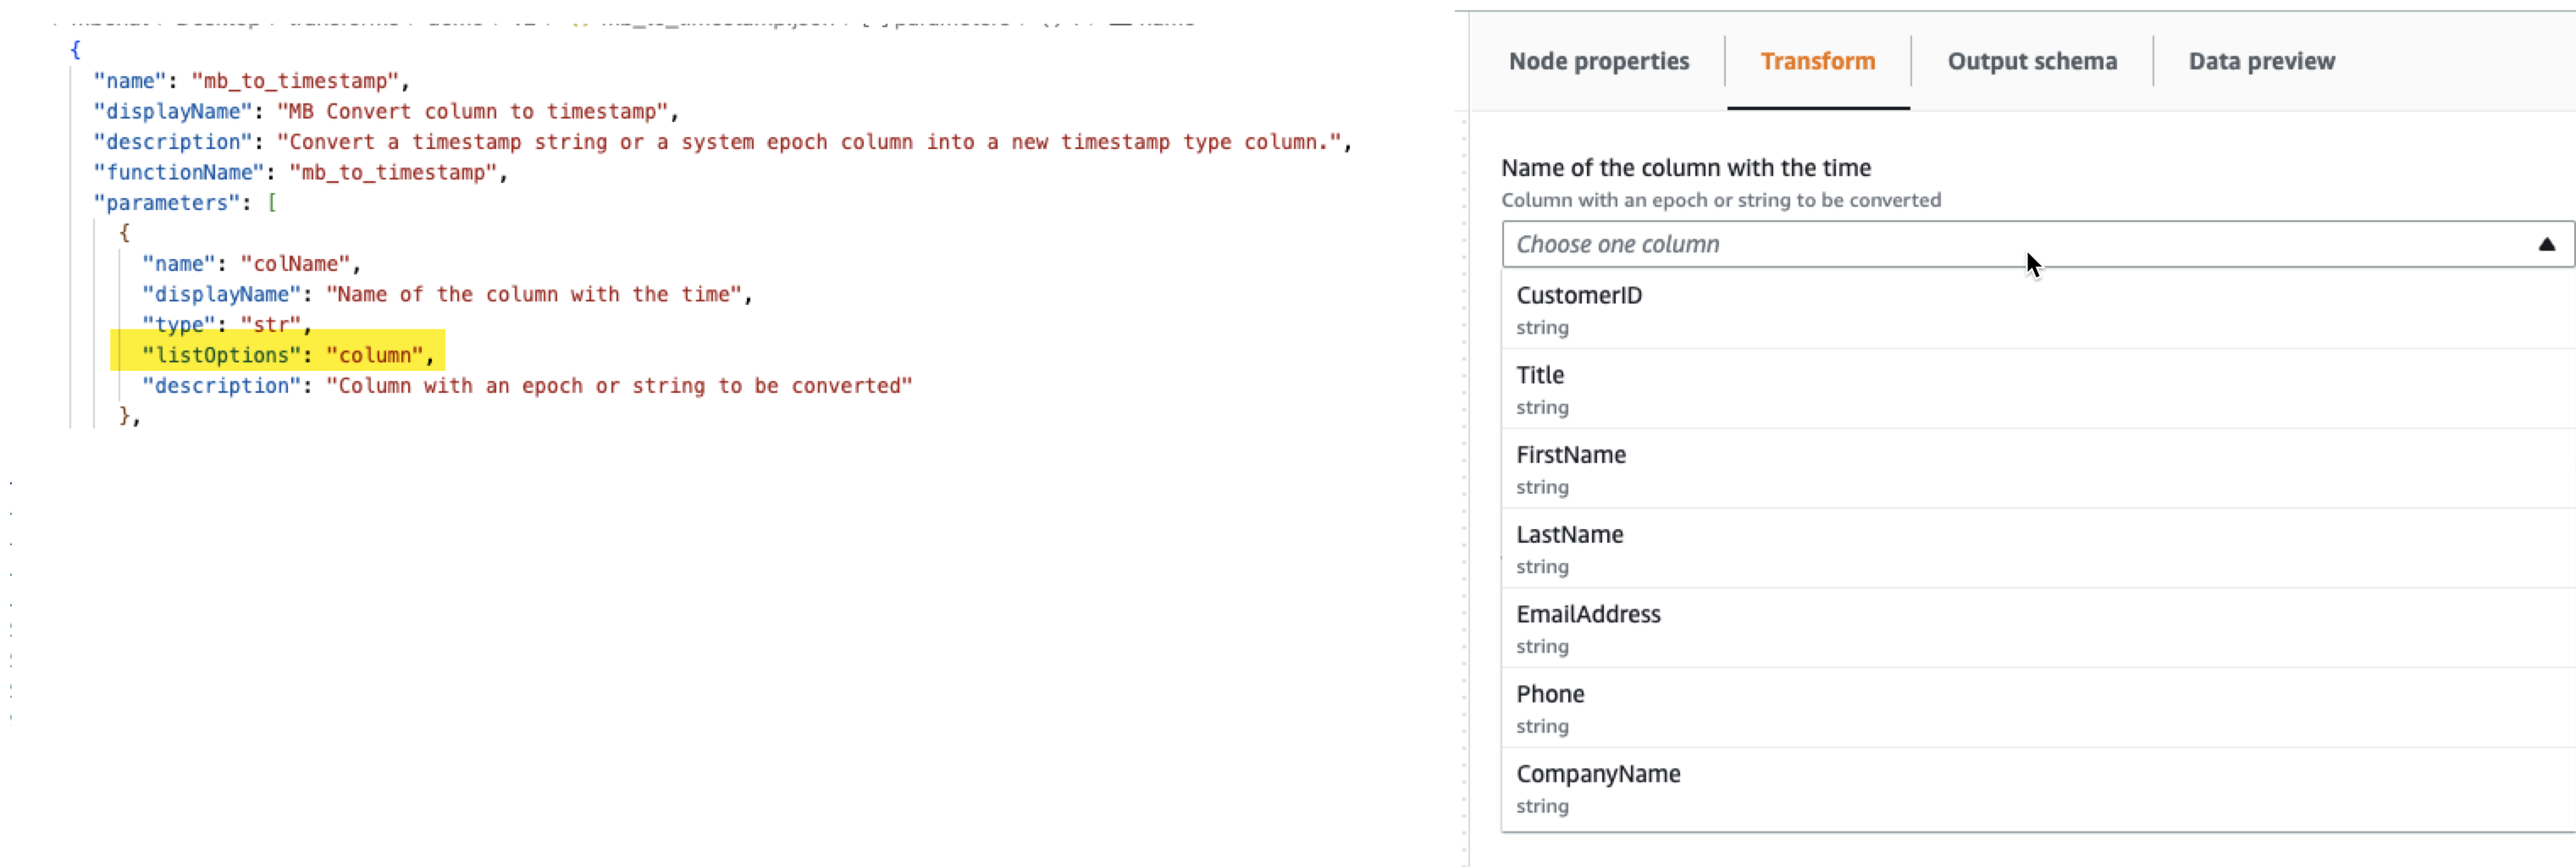 屏幕截图显示了一个示例 JSON 文件，其中 listOptions 参数设置为“column”，生成的用户界面显示在 Amazon Glue Studio 中。